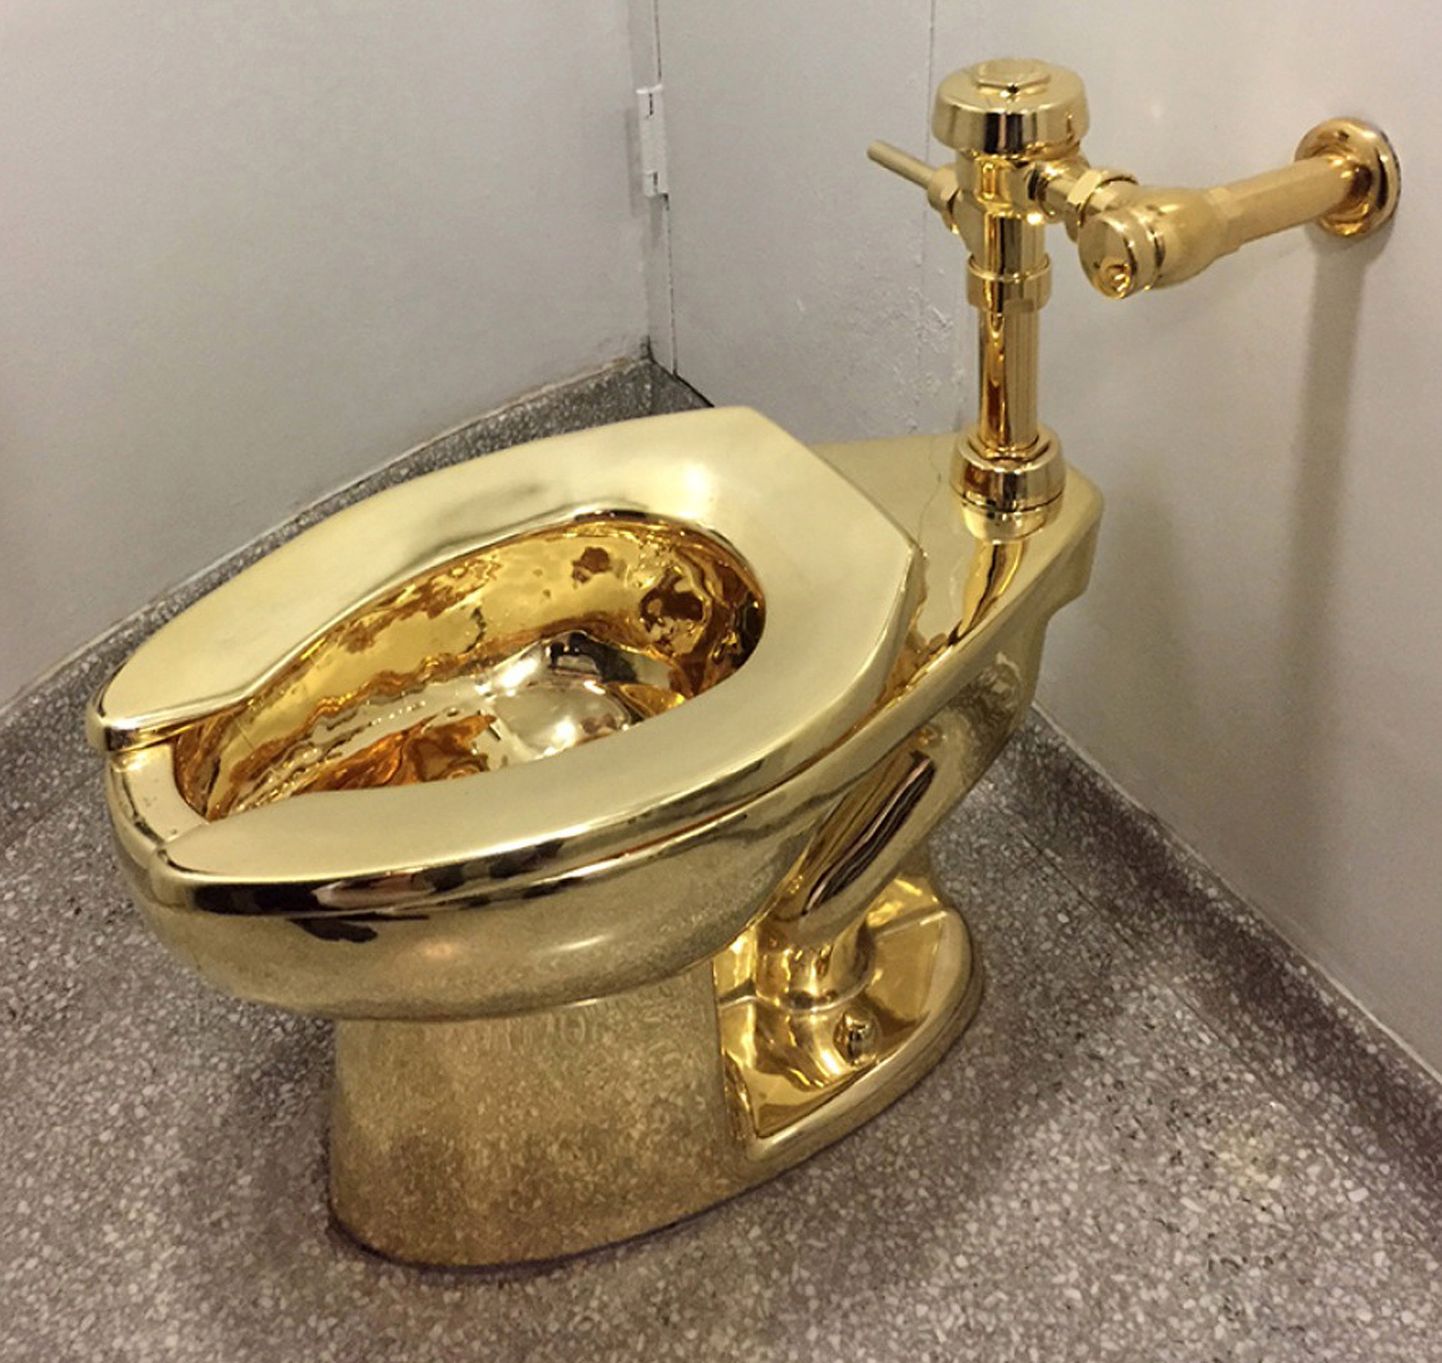 Itaalia kunstniku Maurizio Cattelani teos «America», mis on 18-karaadisest kullast WC-pott, Suurbritannia Blenheimi palees.